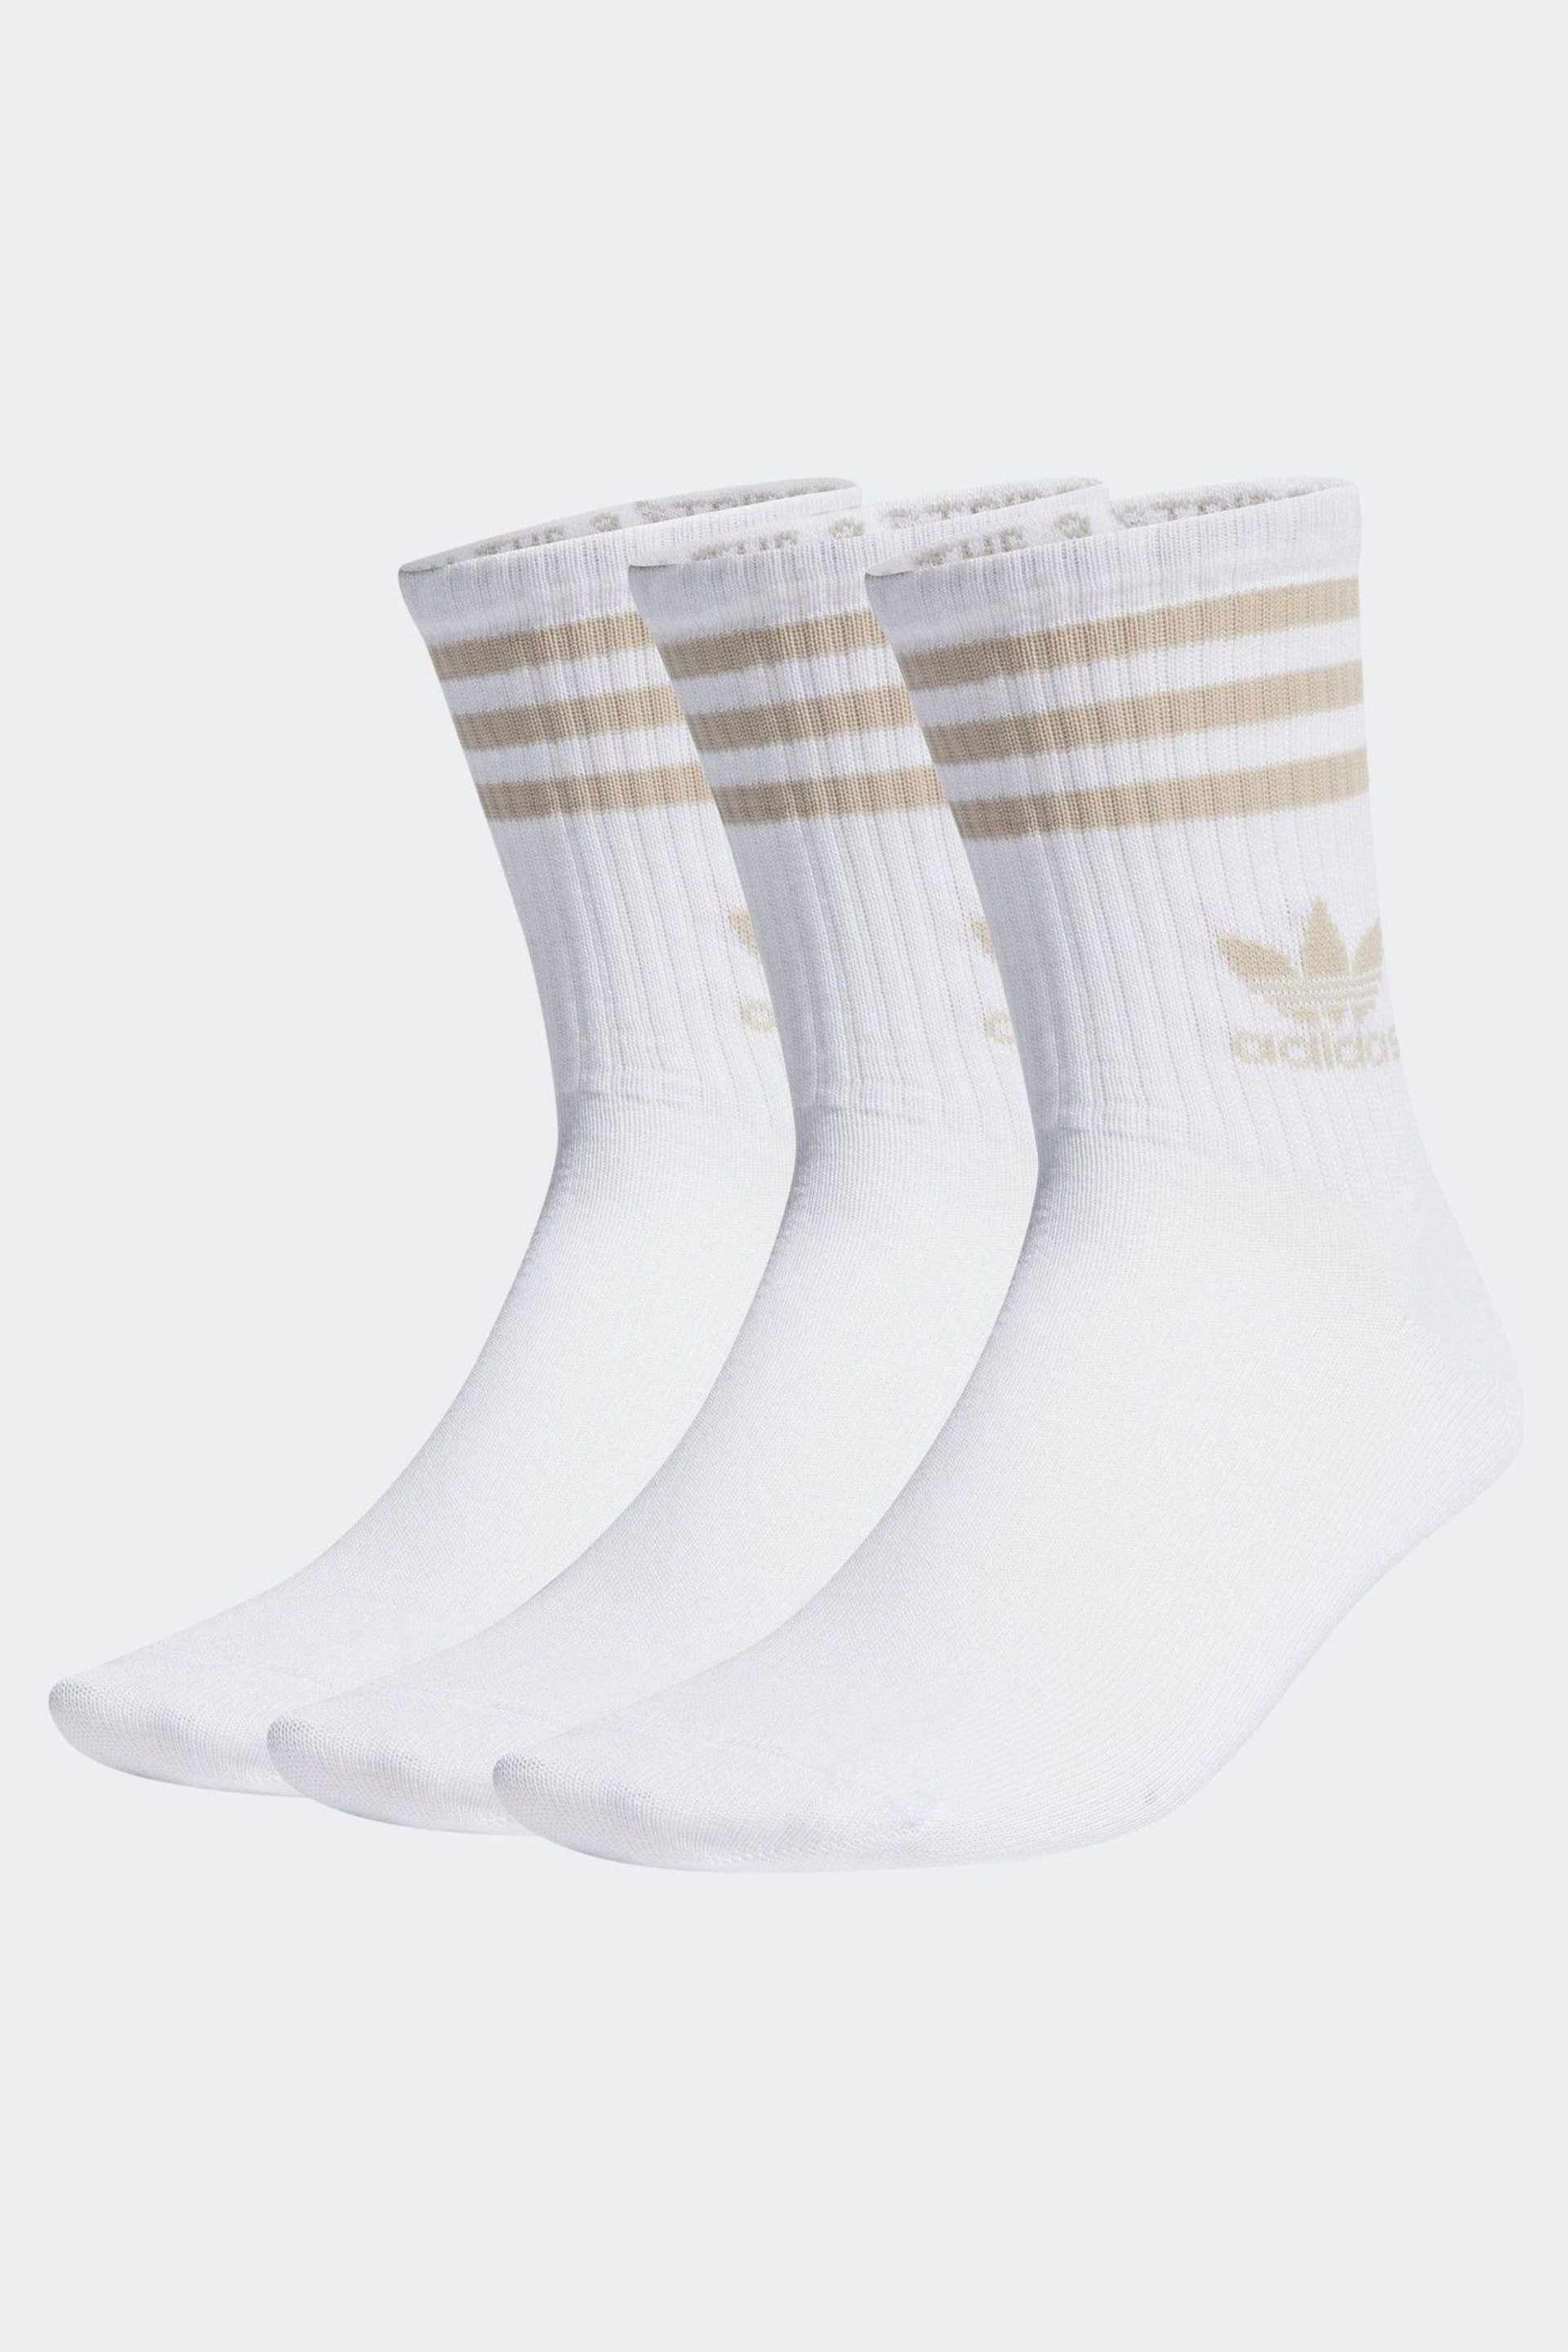 adidas Originals Mid Cut Crew White Socks 3 Pairs - Image 1 of 1